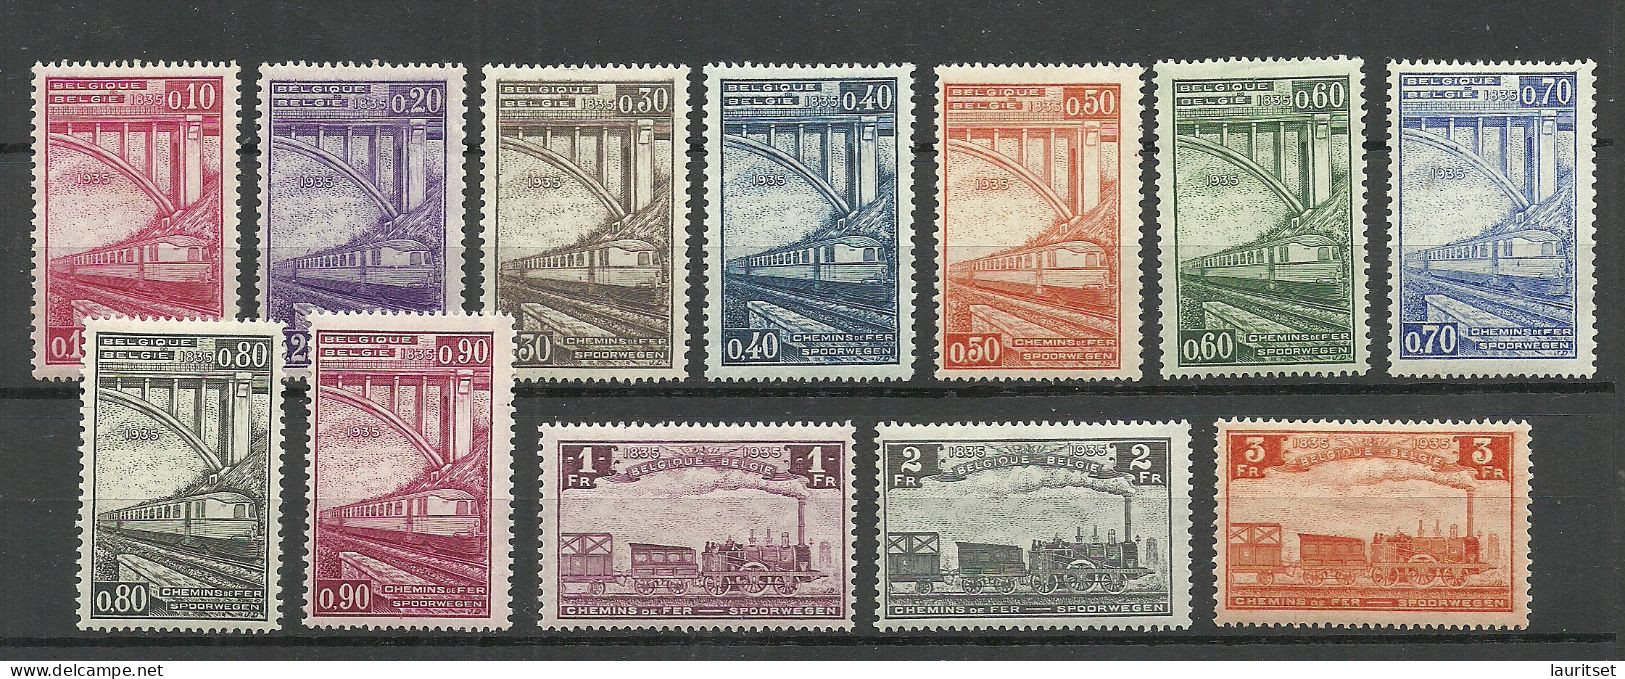 BELGIEN Belgium Belgique 1935 Michel 171 - 182 Eisenbahnpaketmarken Railway Packet Stamps * - Nuovi